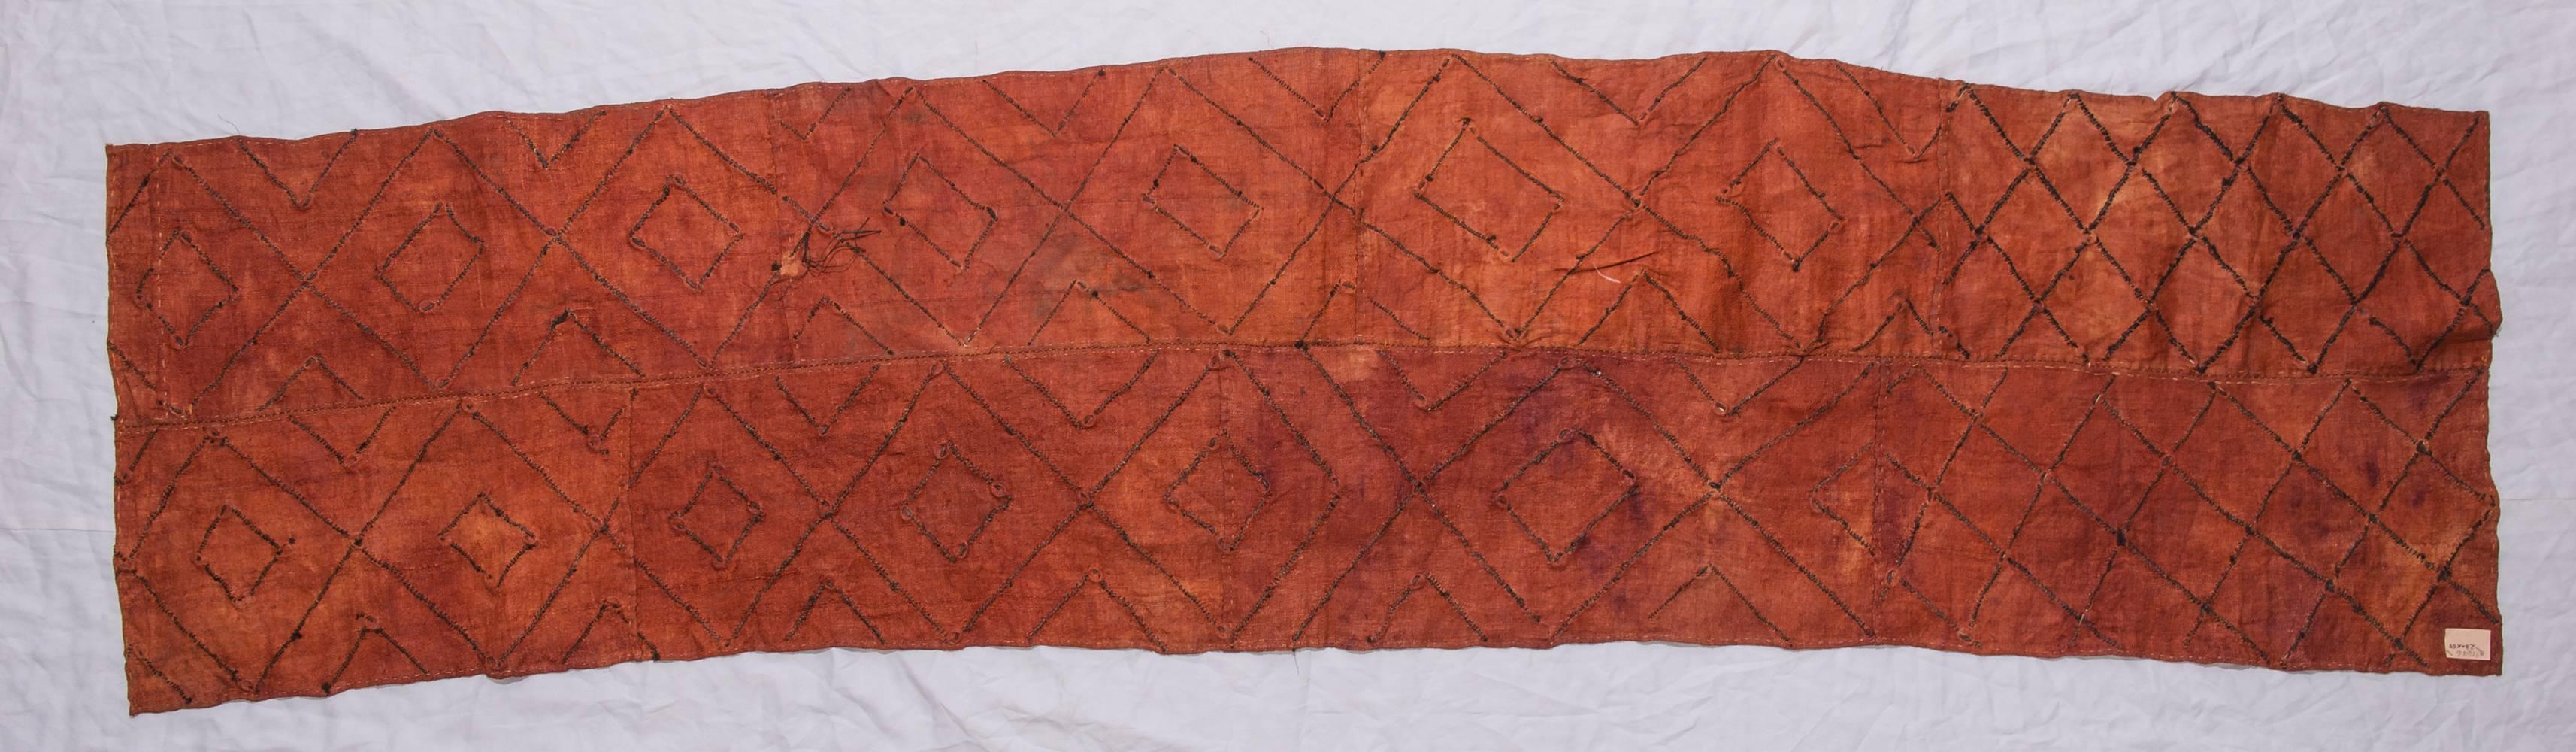 B/1676. Altes afrikanisches Textil aus Kuba, Zaire: mit kleinen Muscheln als Ornament.
Eine IDEA: verwenden Sie diesen Artikel als Rückenlehnenbezug für ein Sofa !